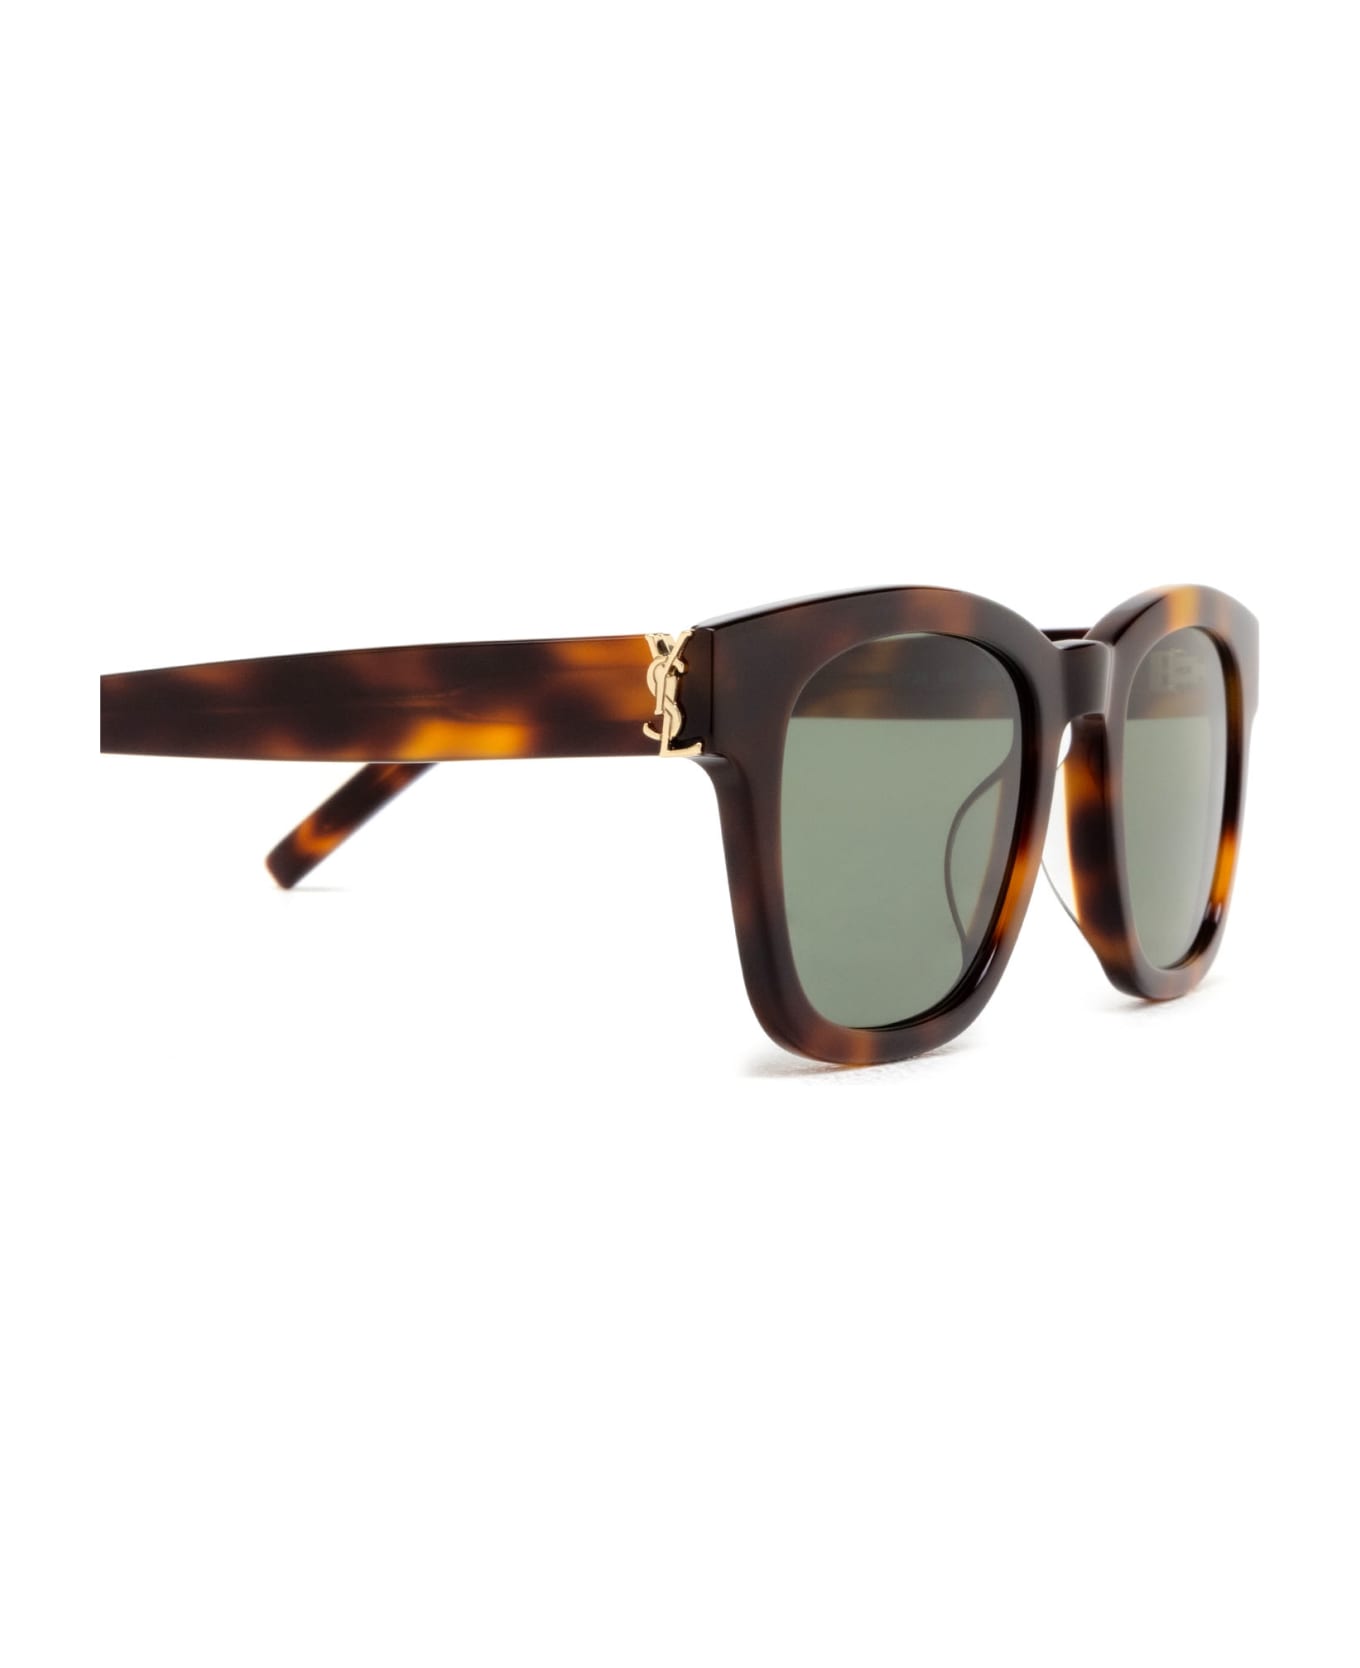 Saint Laurent Eyewear Sl M124 Havana Sunglasses - Havana